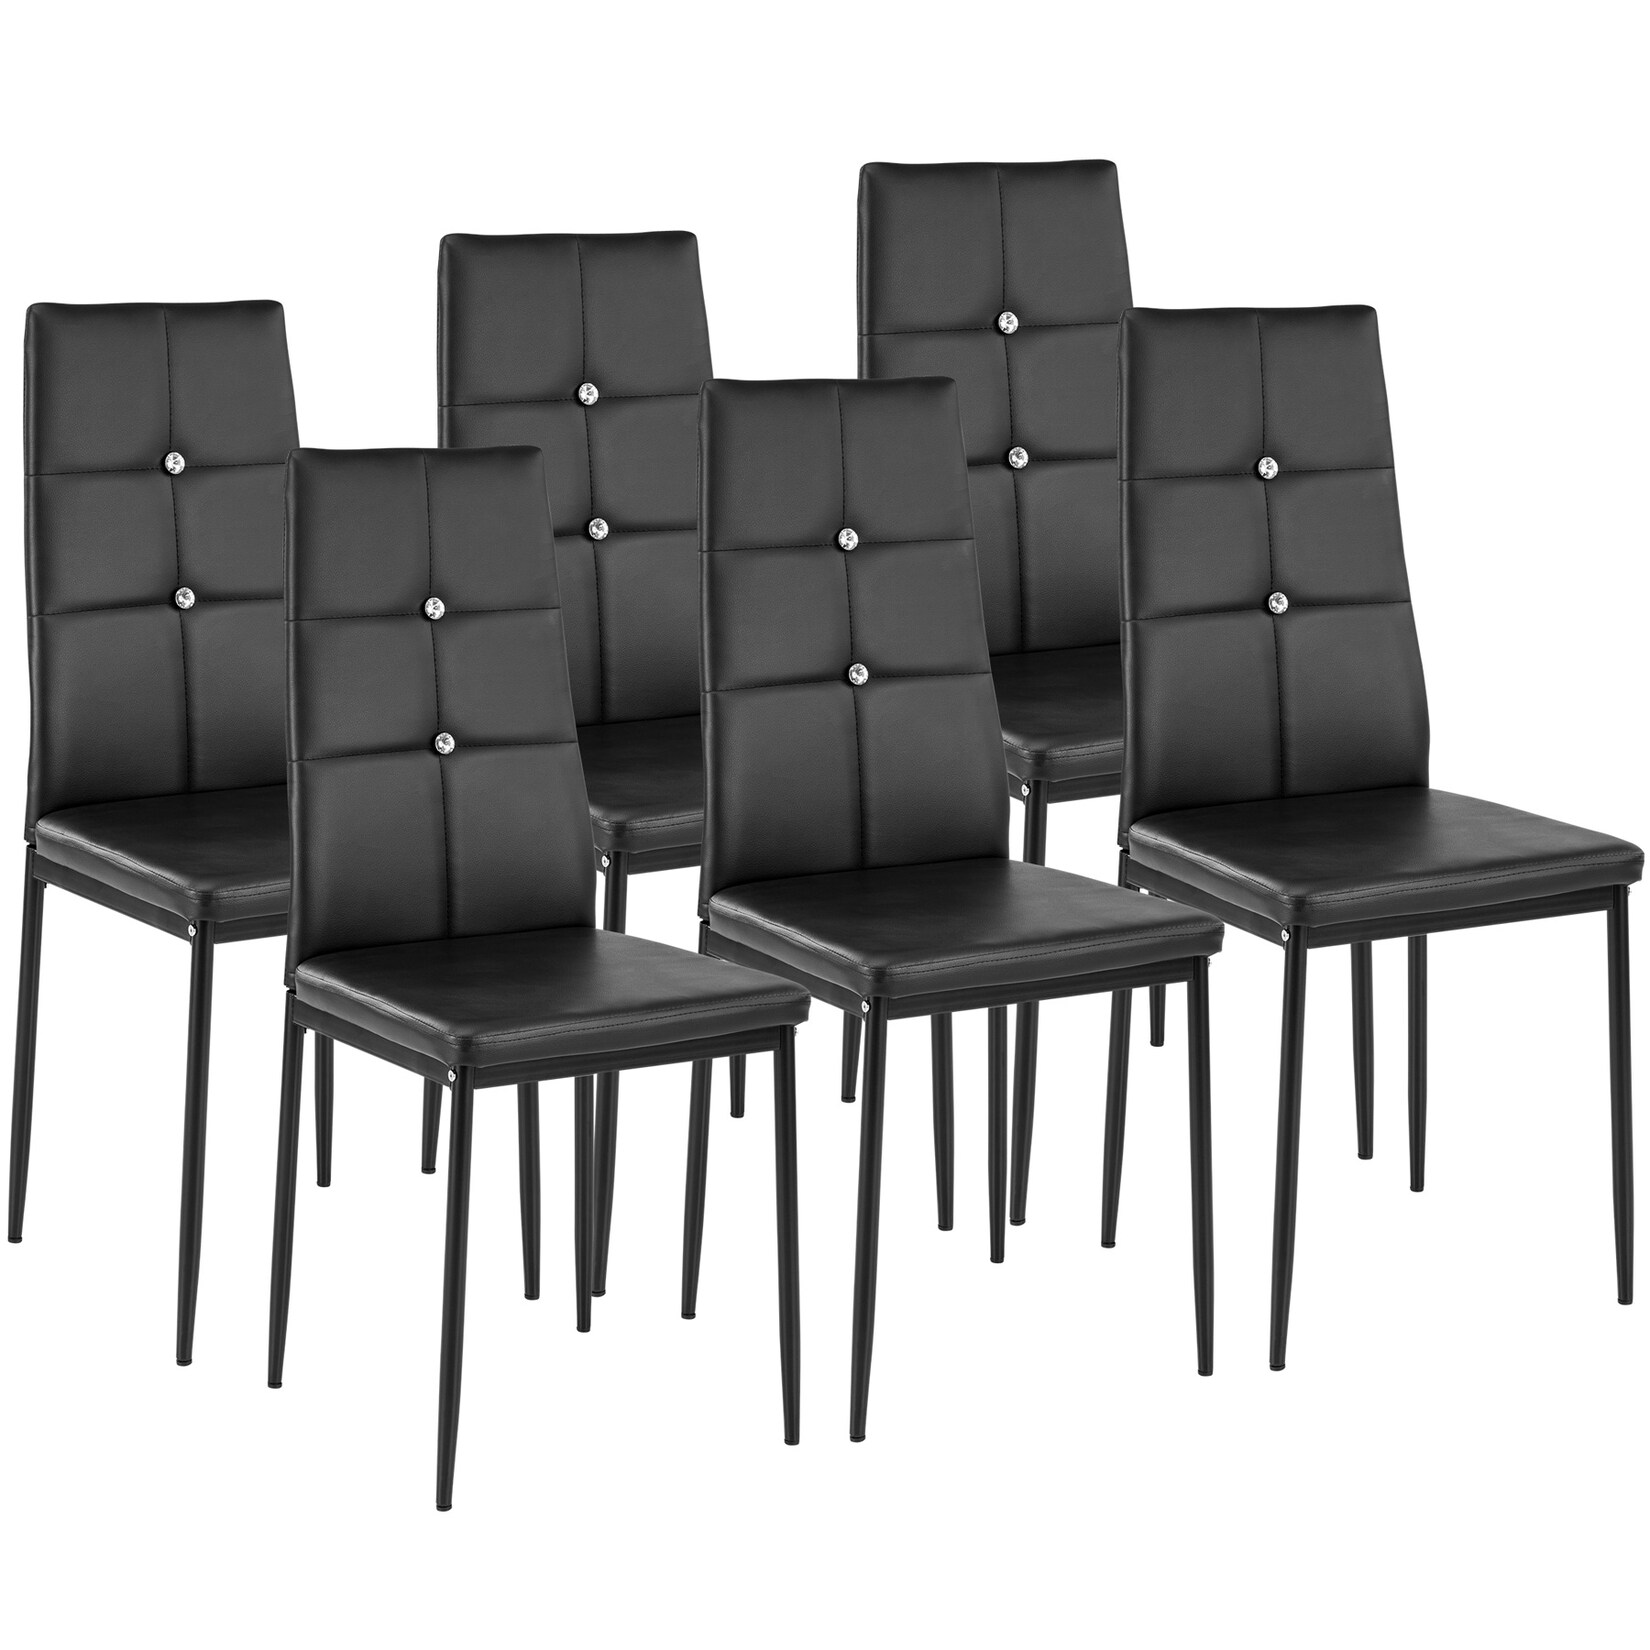 tectake® 6er Set Esszimmerstuhl, gepolstert mit Kunstlederbezug, schlanke Stahlbeine, 40 x 42 x 97 cm